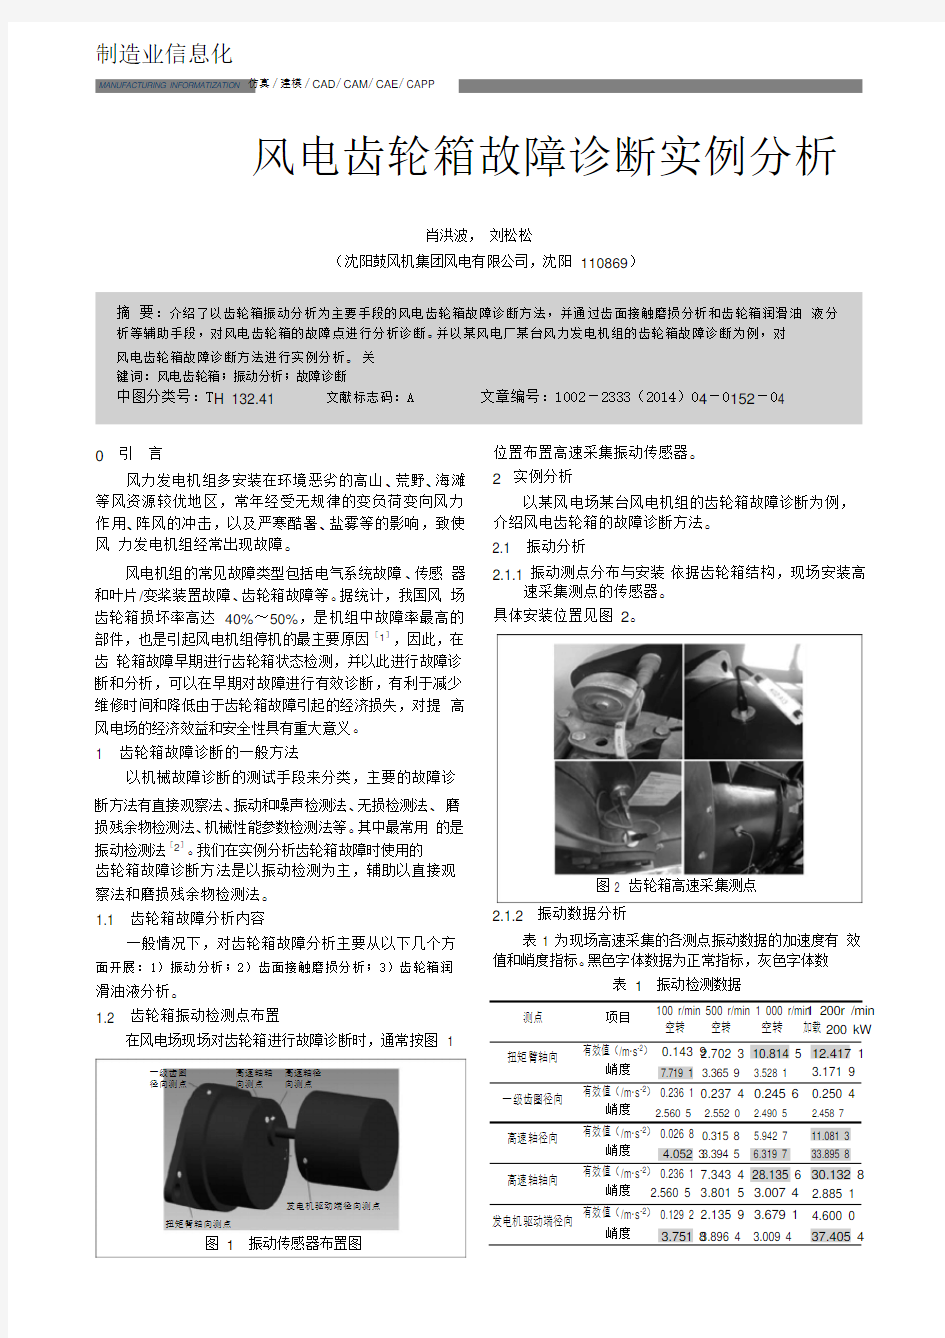 风电齿轮箱故障诊断实例分析.pdf